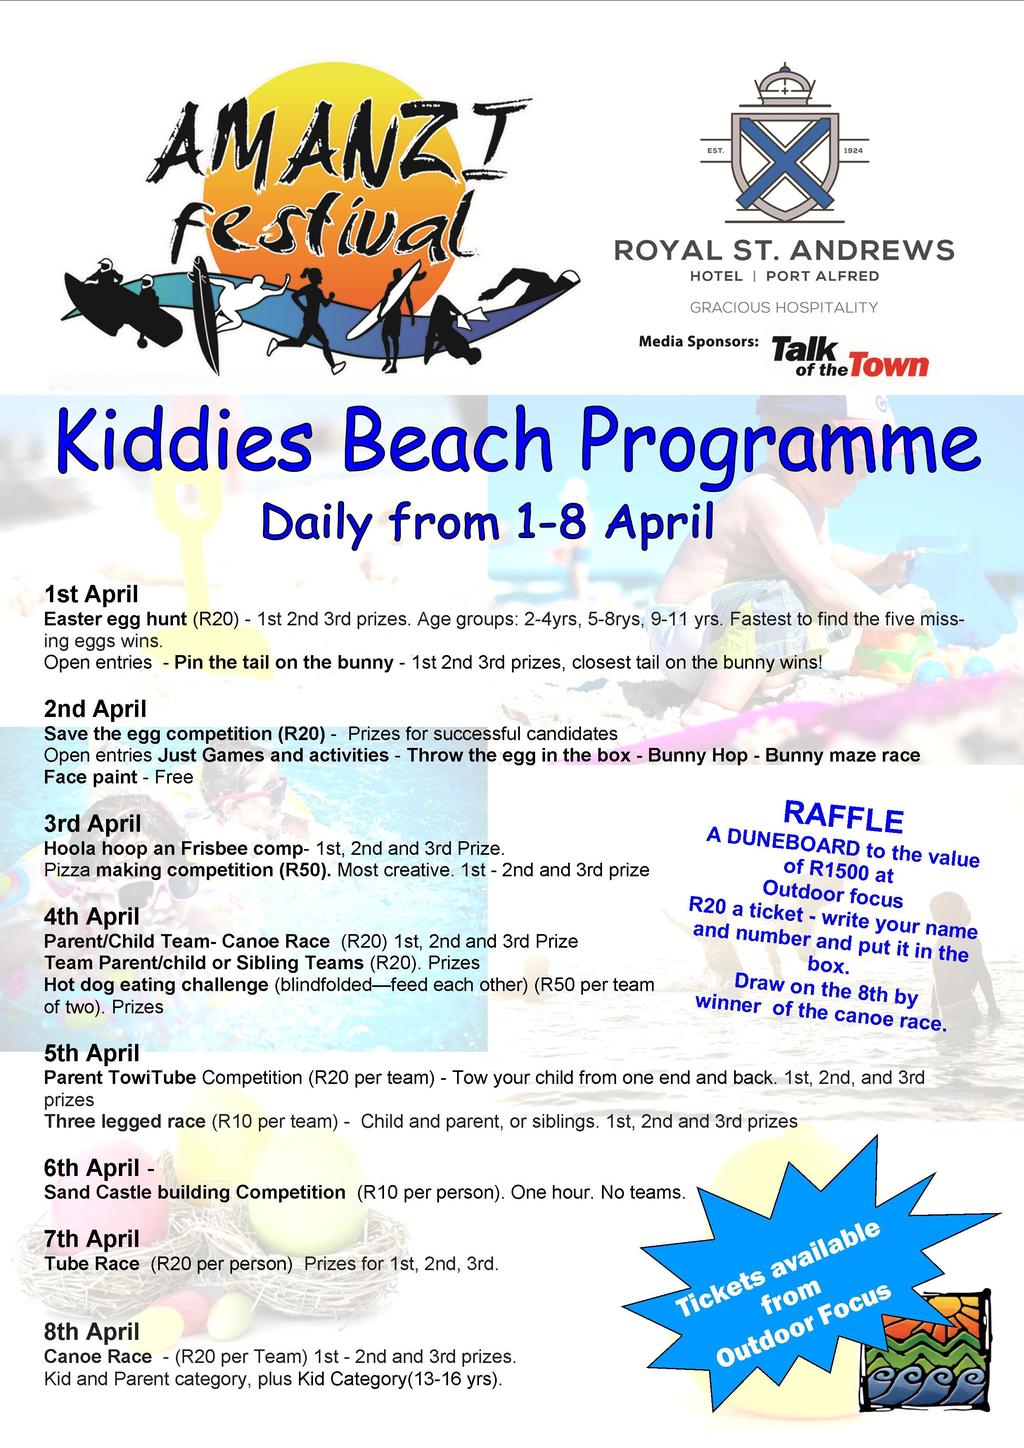 Kiddies activities: A full programme of children s activities was